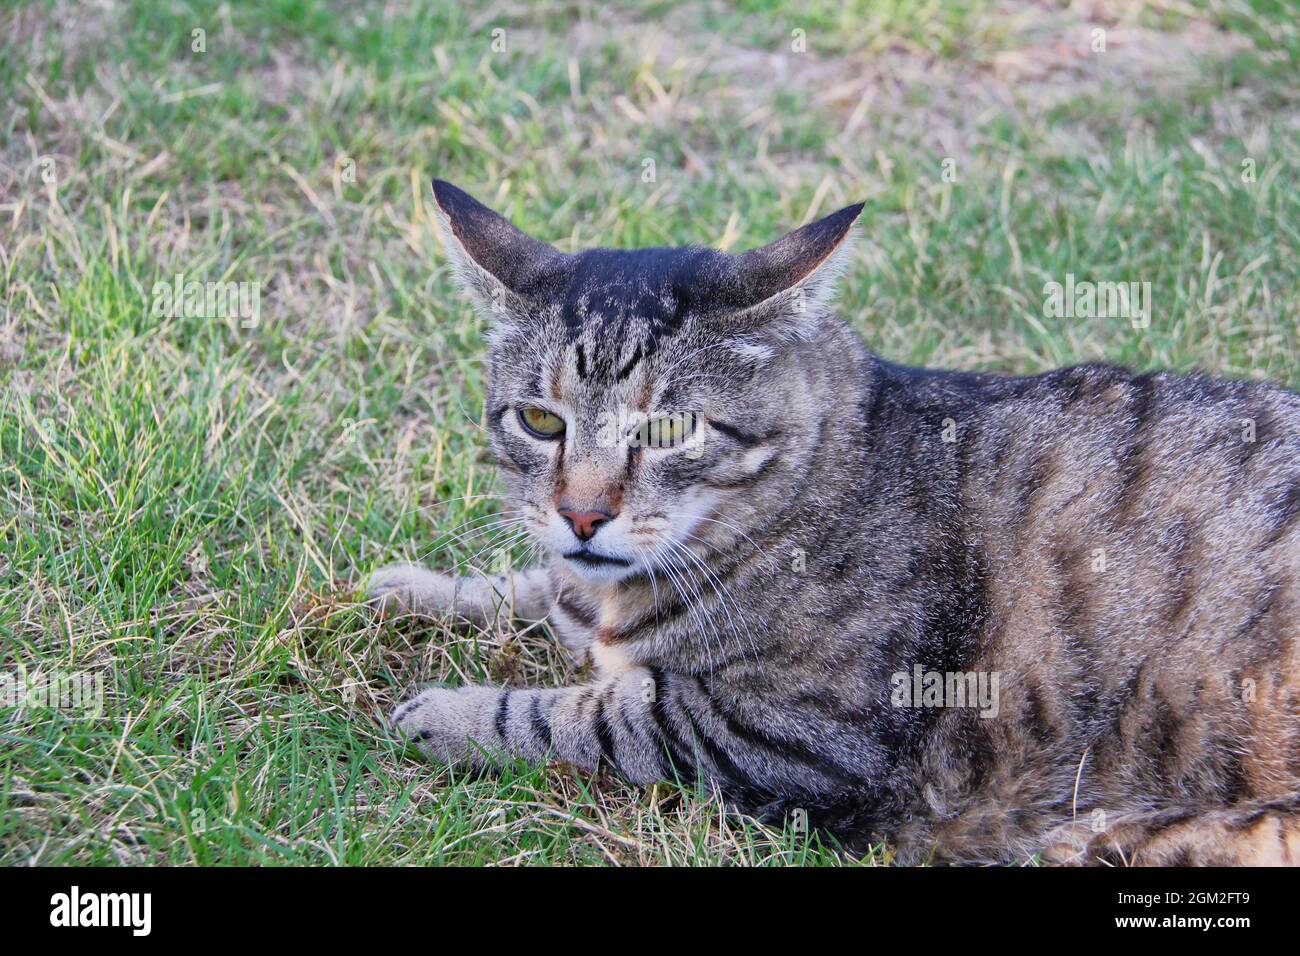 Gato Tabby adulto con expresión ligeramente desconcertada tumbado sobre hierba Foto de stock